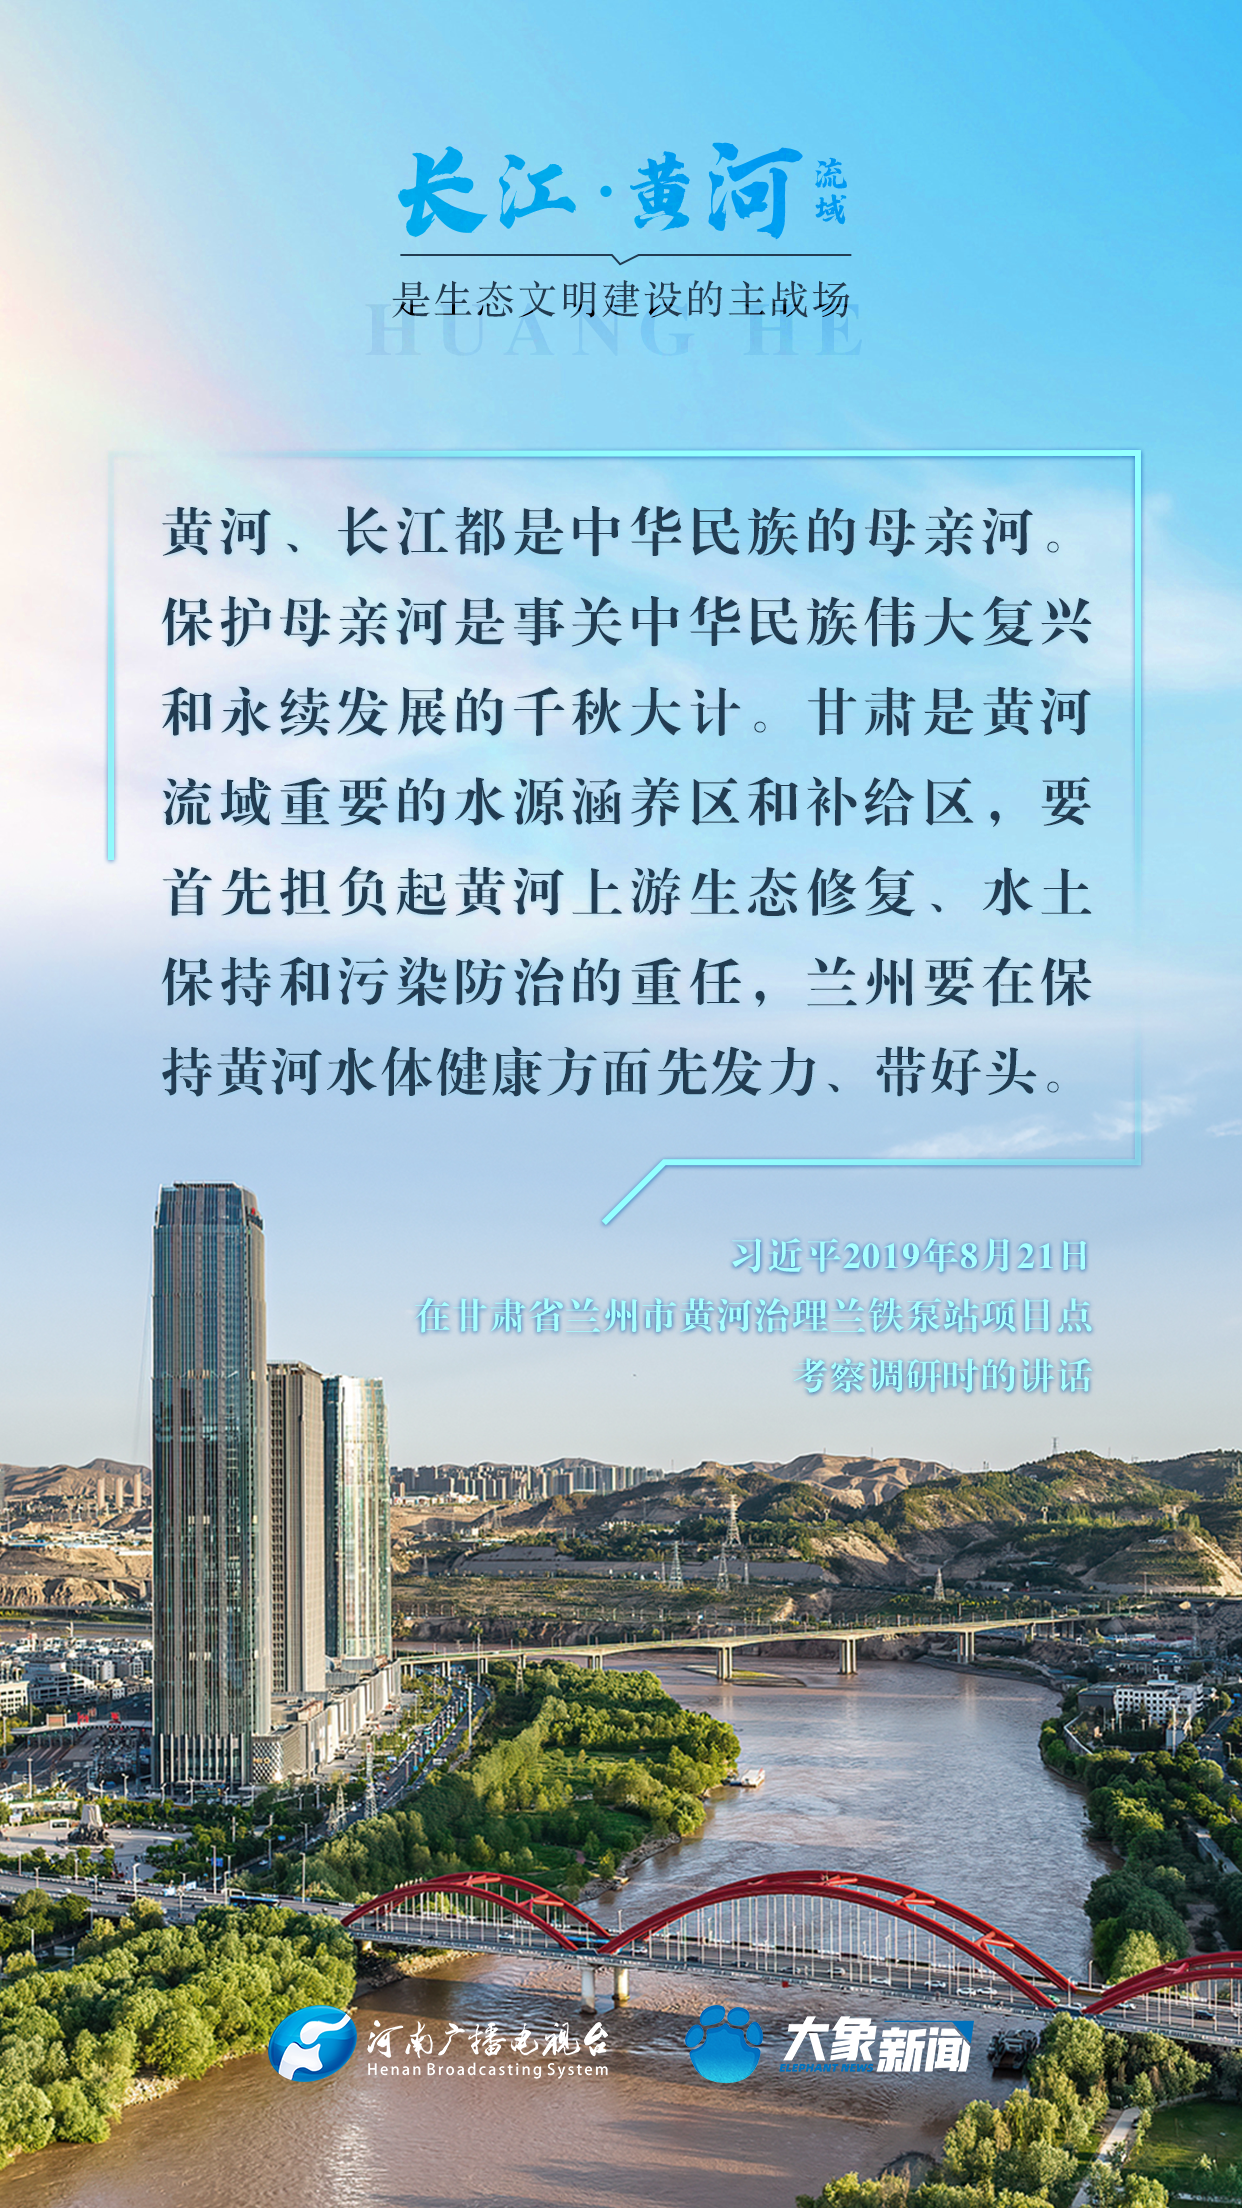 和谐共生 | 长江、黄河流域是生态文明建设的主战场